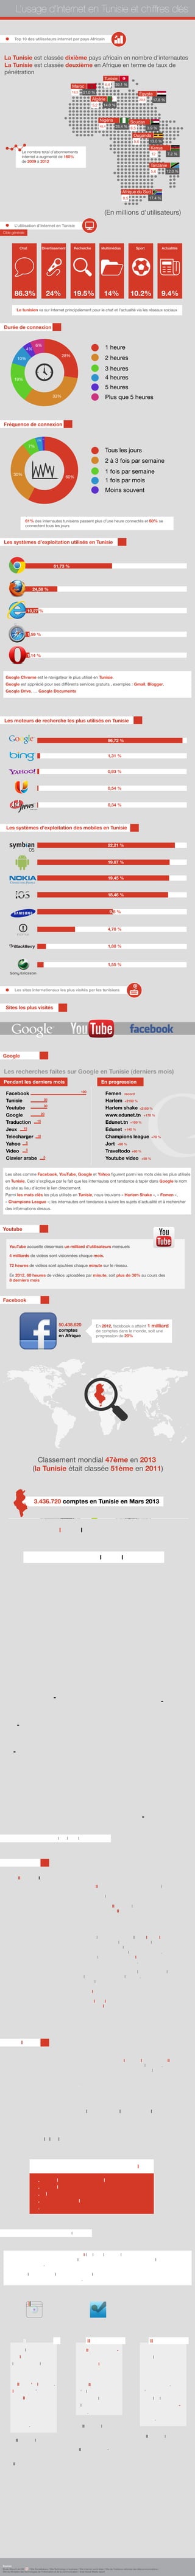 De mai 2011 à fin
2012, la croissance 
enregistrée par
Pinterest, en termes
de visiteurs uniques,
est de 2 702 %.
D'août 2011 à janvier
2012, la plateforme a
enregistré une crois-
sance de près de 
4000%.
L’utilisation d’Internet en Tunisie
Autres réseaux sociaux les plus utilisés en Tunisie
86.3% 19.5% 14%24% 10.2% 9.4%
Chat Recherche MultimédiasDivertissement Sport Actualités
Les sites internationaux les plus visités par les tunisiens
Autres réseaux sociaux en évolution
L’usage d’Internet en Tunisie et chiffres clés
Les systèmes d’exploitation utilisés en Tunisie
90 millions 20 millions25 millions
Les moteurs de recherche les plus utilisés en Tunisie
Les systèmes d’exploitation des mobiles en Tunisie
61,73 %
96,72 %
22,21 %
19,67 %
19,45 %
18,46 %
9,8 %
4,78 %
1,88 %
1,55 %
1,31 %
0,93 %
0,54 %
0,34 %
24,58 %
10,27 %
1,59 %
1,14 %
Les recherches faites sur Google en Tunisie (derniers mois)
inconnue
Sites les plus visités
Pendant les derniers mois En progression
Facebook
Tunisie
Youtube
Google
Traduction
Jeux
Telecharger
Yahoo
Video
Clavier arabe
Femen
Harlem
Harlem shake
www.edunet.tn
Edunet.tn
Edunet
Champions league
Jort
Traveltodo
Youtube video
100
record
+2150 %
+2150 %
+170 %
+150 %
+140 %
+70 %
+60 %
+60 %
+50 %
30
30
20
15
15
10
5
5
5
YouTube accueille désormais un milliard d’utilisateurs mensuels
4 milliards de vidéos sont visionnées chaque mois.
72 heures de vidéos sont ajoutées chaque minute sur le réseau.
En 2012, 60 heures de vidéos uploadées par minute, soit plus de 30% au cours des
8 derniers mois
En 2012, facebook a atteint 1 milliard
de comptes dans le monde, soit une
progression de 20%
Linked In c’est plus de 200 millions de
membres à travers le monde.
Le réseau professionnel enregistre
pas moins de 172 800 nouveaux
membres par jour, ce qui représente
2 inscriptions par seconde !
50.438.620
comptes
en Afrique
10 800 comptes
en Tunisie
Facebook
Twitter
Linked In
Youtube
Google
Durée de connexion
Fréquence de connexion
28%
33%
19%
10%
4%
6%
1 heure
2 heures
3 heures
4 heures
5 heures
Tous les jours
2 à 3 fois par semaine
1 fois par semaine
1 fois par mois
Moins souvent
Plus que 5 heures
60%
30%
7%
2%
1%
Classement mondial 47ème en 2013
(la Tunisie était classée 51ème en 2011)
3.436.720 comptes en Tunisie en Mars 2013
Évolution plus que 200% par rapport à 2010
Taux de pénétration de la population 32,46%
58%42%
58% hommes42% femmes
39%
9%
8%
5%
5%
30%
Répartition d’âges des Tunisiens sur Facebook
18-24 ans
25-34 ans
6-17 ans
13-15 ans
45-100 ans
44 ans
200 millions d’utilisateurs actifs
175 millions de nouveaux tweets sont publiés chaque jour
Twitter enregistre 300 000 nouveaux visiteurs chaque jour 
62% des utilisateurs de Twitter ont entre 18 et 34 ans
750 tweets sont partagés chaque seconde
Twitter a 140 millions d’utilisateurs actifs et
voit passer 340 millions de tweets chaque jour
Hommes : 52 % / Femmes : 48%
Moyenne d’age : 40 ans
80% ont au moins un degré universitaire
32% de middle level Managers
14,1% de cadres dirigeants
Top 5 des secteurs d’activités sur Linked In
1. Technologies et services de l’information
2. Logiciels informatiques
3. Télécommunications
4. Marketing et publicité
5. Banques
En seulement
quelques semaines,
le réseau social sur
smartphone de partage
de photos a gagné 10
millions d'utilisateurs.
Instagram c'est aussi
40 millions de photos
chaque jour, 8500 
Likes et 1000 
commentaires par
seconde.
2 milliards de check-
in sur Foursquare en
2012 dans le monde
En Juin 2011 :
Foursquare comptait 
10 millions
d'utilisateurs soit,
230% d’utilisateurs en
plus par rapport à
2010.
10 millions d’utilisateurs actifs
25 millions d’utilisateurs actifs
20 millions d’utilisateurs actifs
98 minutes par mois
2 milliards de check-in en 2012
40 millions de photos chaque jour
1000 commentaires par seconde
8500 Likes par seconde
Le tunisien va sur Internet principalement pour le chat et l'actualité via les réseaux sociaux
61% des internautes tunisiens passent plus d’une heure connectés et 60% se
connectent tous les jours
La répartition des internautes sur le réseau social professionnel :
Bien que Facebook reste Le réseau social le plus utilisé dans le monde et en Tunisie, d’autres
réseaux sociaux ont enregistré une évolution constante, en terme de nombre d’utilisateurs, durant
cette dernière année.
En Tunisie, le nombre d’utilisateurs de ces applications et réseaux sociaux ne cesse d’augmenter
et certaines marques sont déjà présentes.
Google Chrome est le navigateur le plus utilisé en Tunisie.
Google est apprécié pour ses différents services gratuits , exemples : Gmail, Blogger,
Google Drive, … Google Documents
Les sites comme Facebook, YouTube, Google et Yahoo figurent parmi les mots clés les plus utilisés
en Tunisie. Ceci s’explique par le fait que les internautes ont tendance à taper dans Google le nom
du site au lieu d’écrire le lien directement.
Parmi les mots clés les plus utilisés en Tunisie, nous trouvons « Harlem Shake », « Femen »,
« Champions League »; les internautes ont tendance à suivre les sujets d’actualité et à rechercher
des informations dessus.
Etude Wave 6 de UM / Site Socialbakers / Site Technology in business / Site Internet world stats / Site de l’instance nationale des télécommunications /
Site du Ministère des technologies de l’information et de la communication / Arab Social Media report
Cible générale
Depuis les premières étincelles de la révolution,
Twitter est devenu l’une des principales sources
d’information principalement à cause des médias qui
ne couvraient pas assez les manifestations. Twitter est
devenu le nouveau média et le hashtag #sidibouzid
est devenu un trending topic.
A chaque évènement, national ou international,
il y a un hashtag pour le suivre.
Parmi les hashtags phares de ce
début d’année
#Harlemshake #tnzoo #9pm
#marzouki #Derby #Femen
#Emelmathlouthi
#Chokribelaid #FSM
245.757 comptes
en Tunisie
Sources
(En millions d'utilisateurs)
Top 10 des utilisateurs internet par pays Africain
La Tunisie est classée dixième pays africain en nombre d'internautes
La Tunisie est classée deuxième en Afrique en terme de taux de
pénétration
Le nombre total d’abonnements
internet a augmenté de 160%
de 2009 à 2012
Tunisie
4,4 39.1 %Maroc
16,5 51.0 %
Algérie
5,2 14.0 %
Égypte
29,8 17.8 %
Nigéria
48,4 28.4 %
Soudan
6,5 3.9 %
Tanzanie
5,6 12.0 %
8,5
Afrique du Sud
17.4 %
Ouganda
5,6 13.0 %
Kenya
12 7.2 %
 